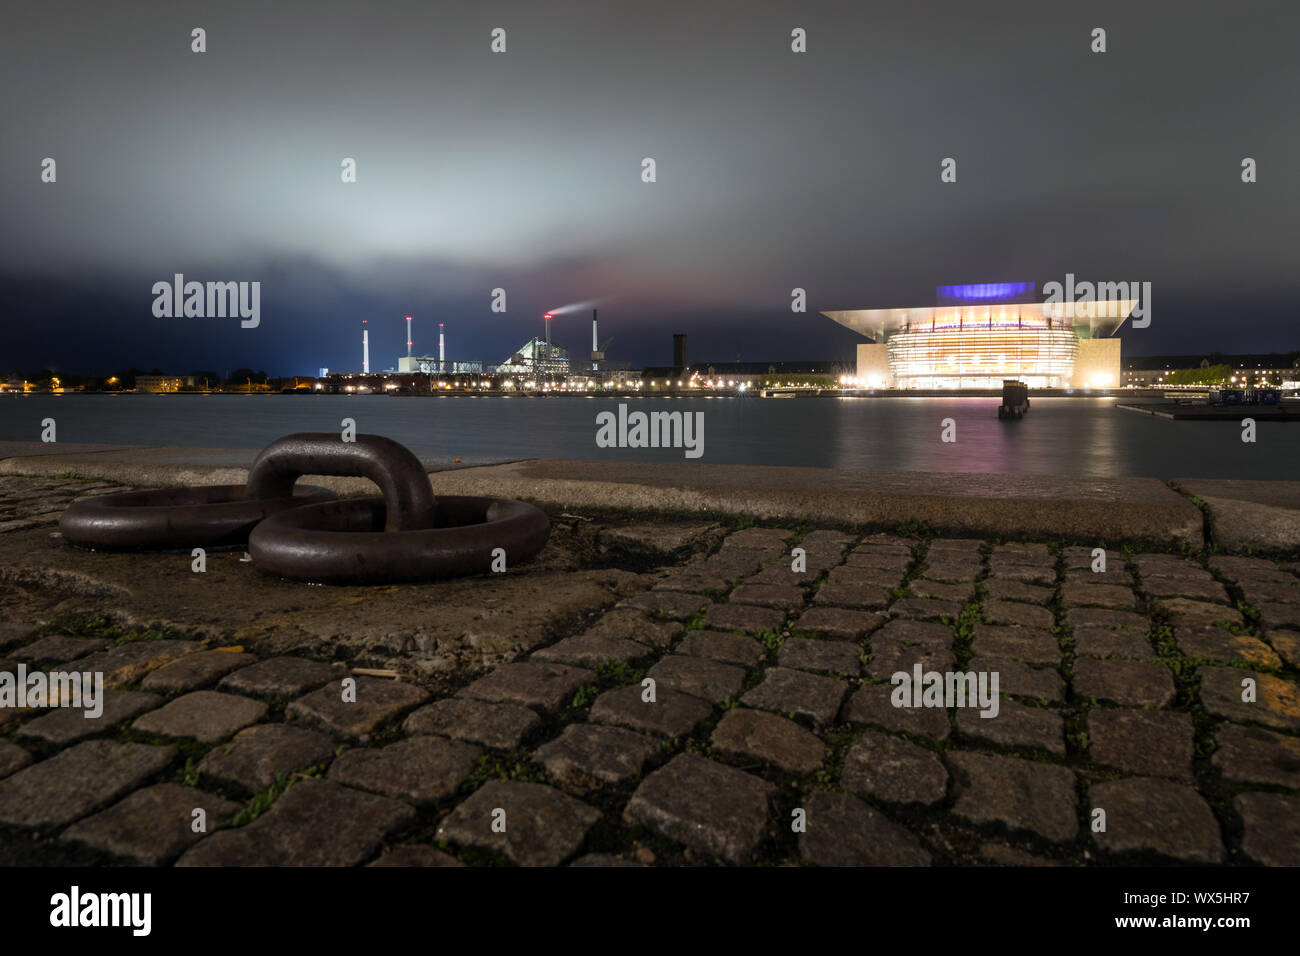 Der Hafen von Kopenhagen mit der Kopenhagener Oper oder Operaen in der Ferne, mit dem Amager bakke Kombiniert tnv Anlage und Skipiste Stockfoto